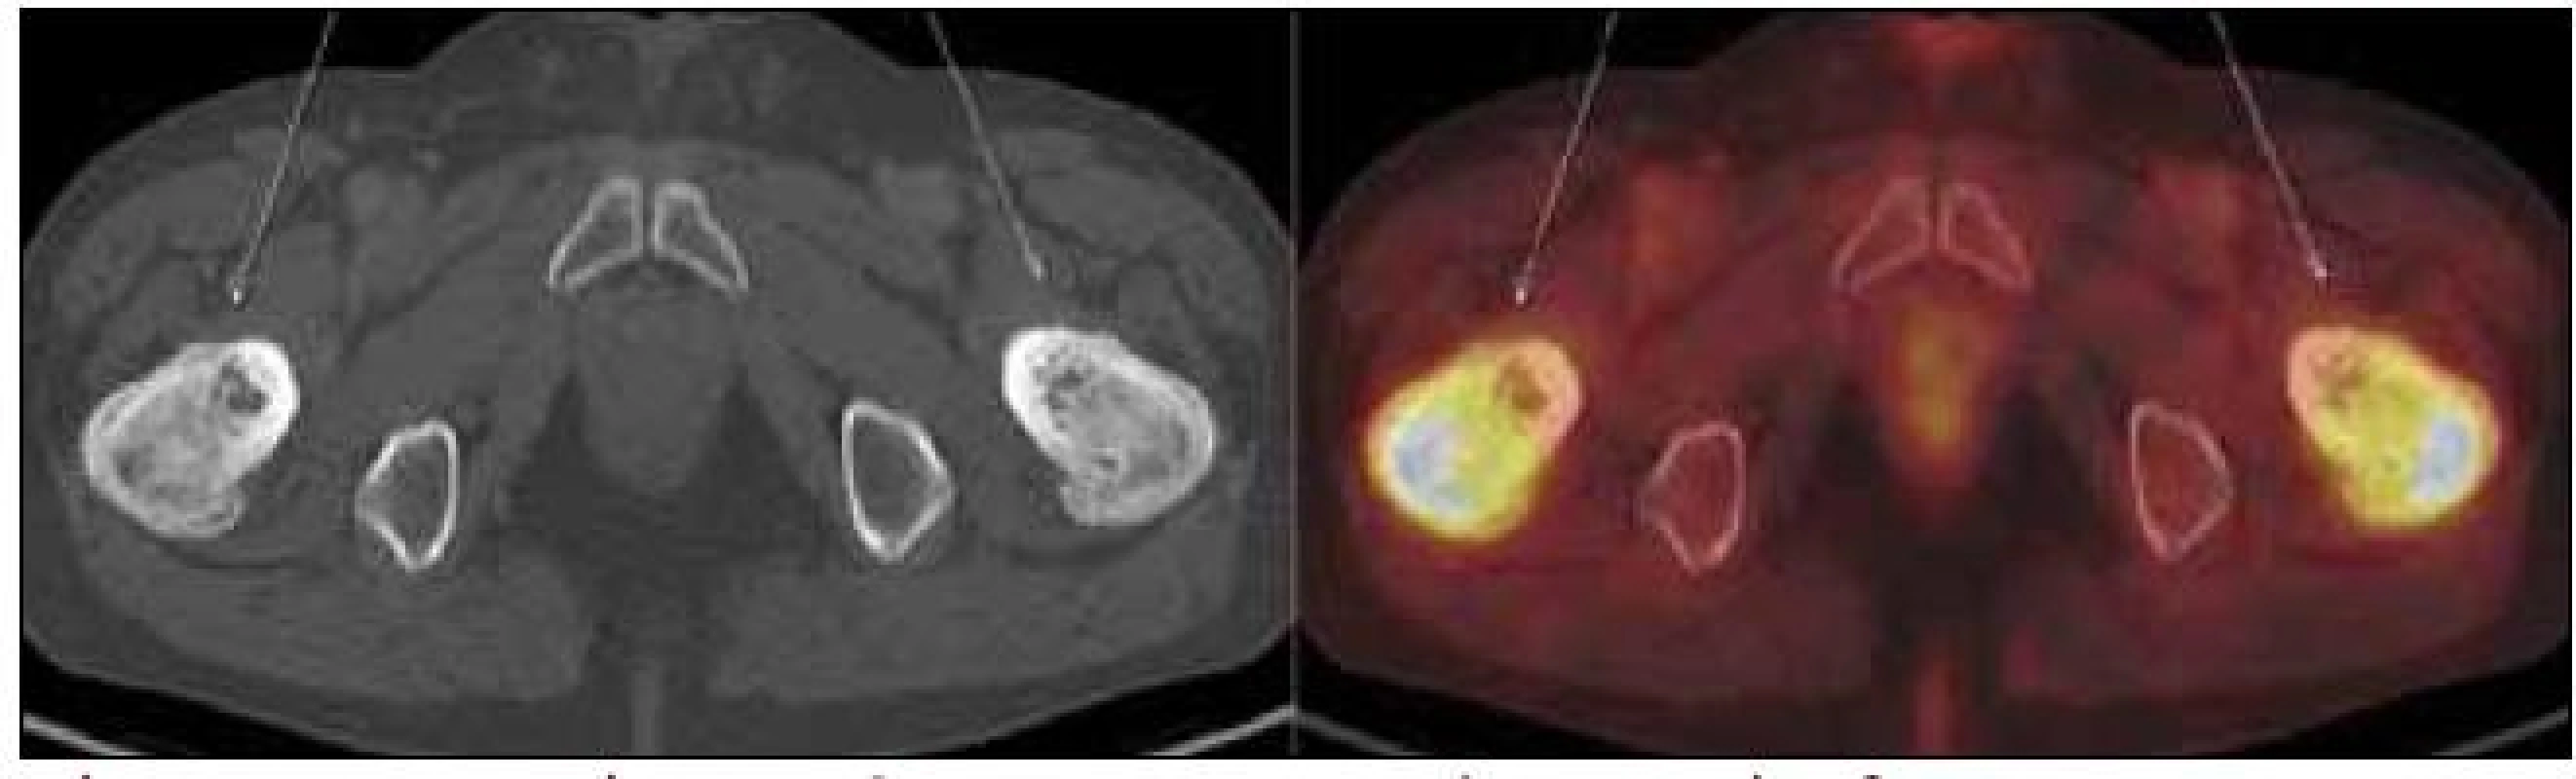 PET-CT zobrazení femuru, transversální řez. Oba femury mají nepravidelnou, převážně sklerotickou strukturu spongiózy s osteolytickými okrsky, v těchto místech je i jasný hypermetabolizmus glukózy.